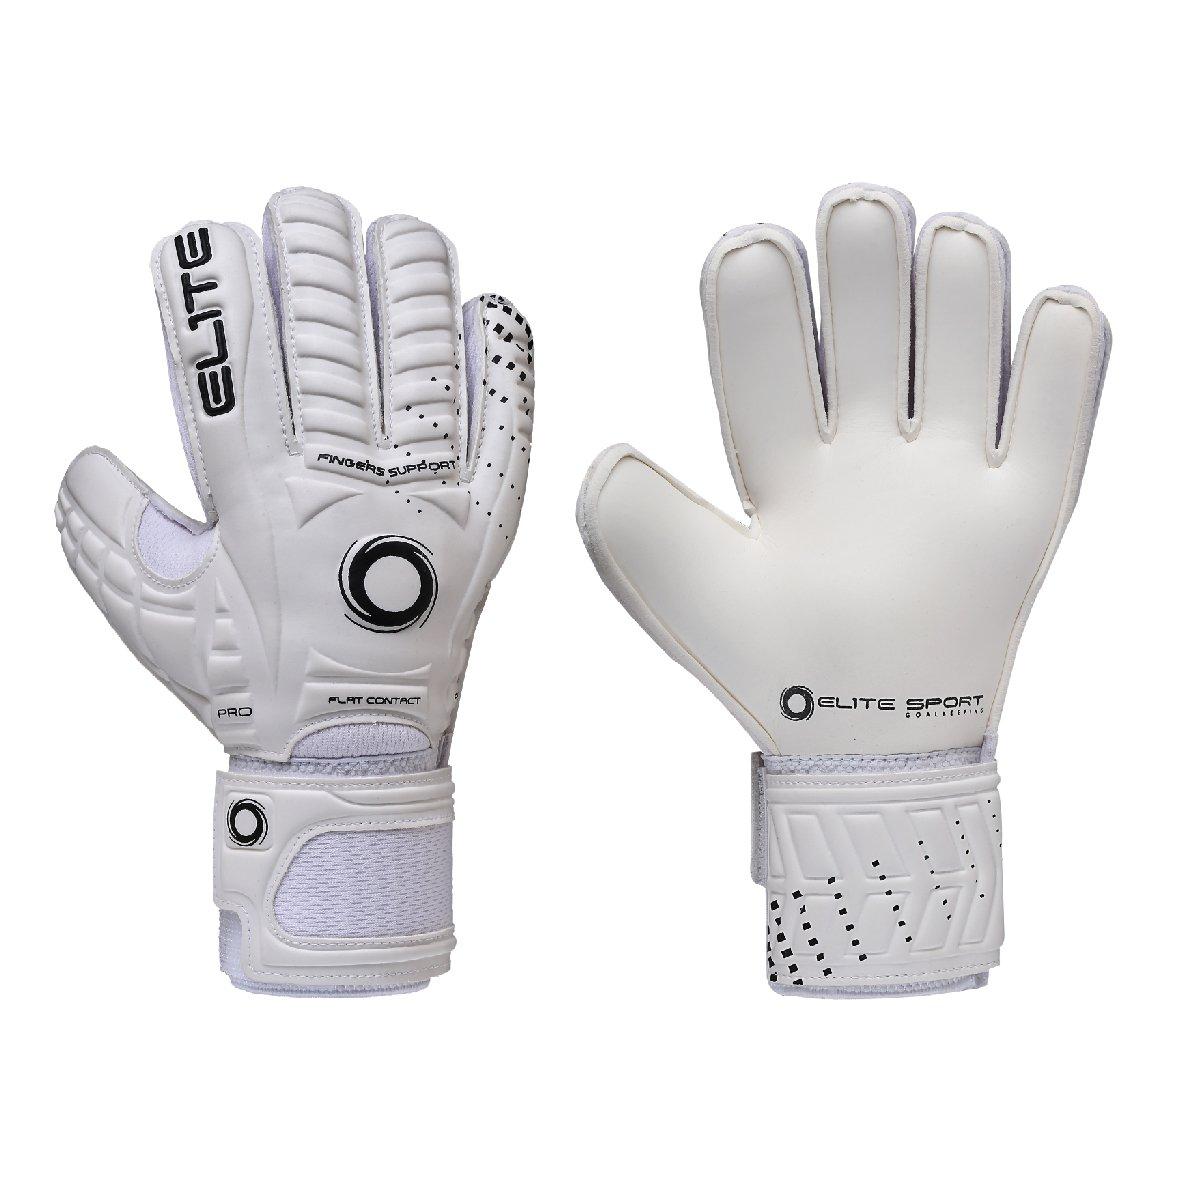 Перчатки вратарские Warrior белые, размер 4 Elite Sports, белый цена и фото